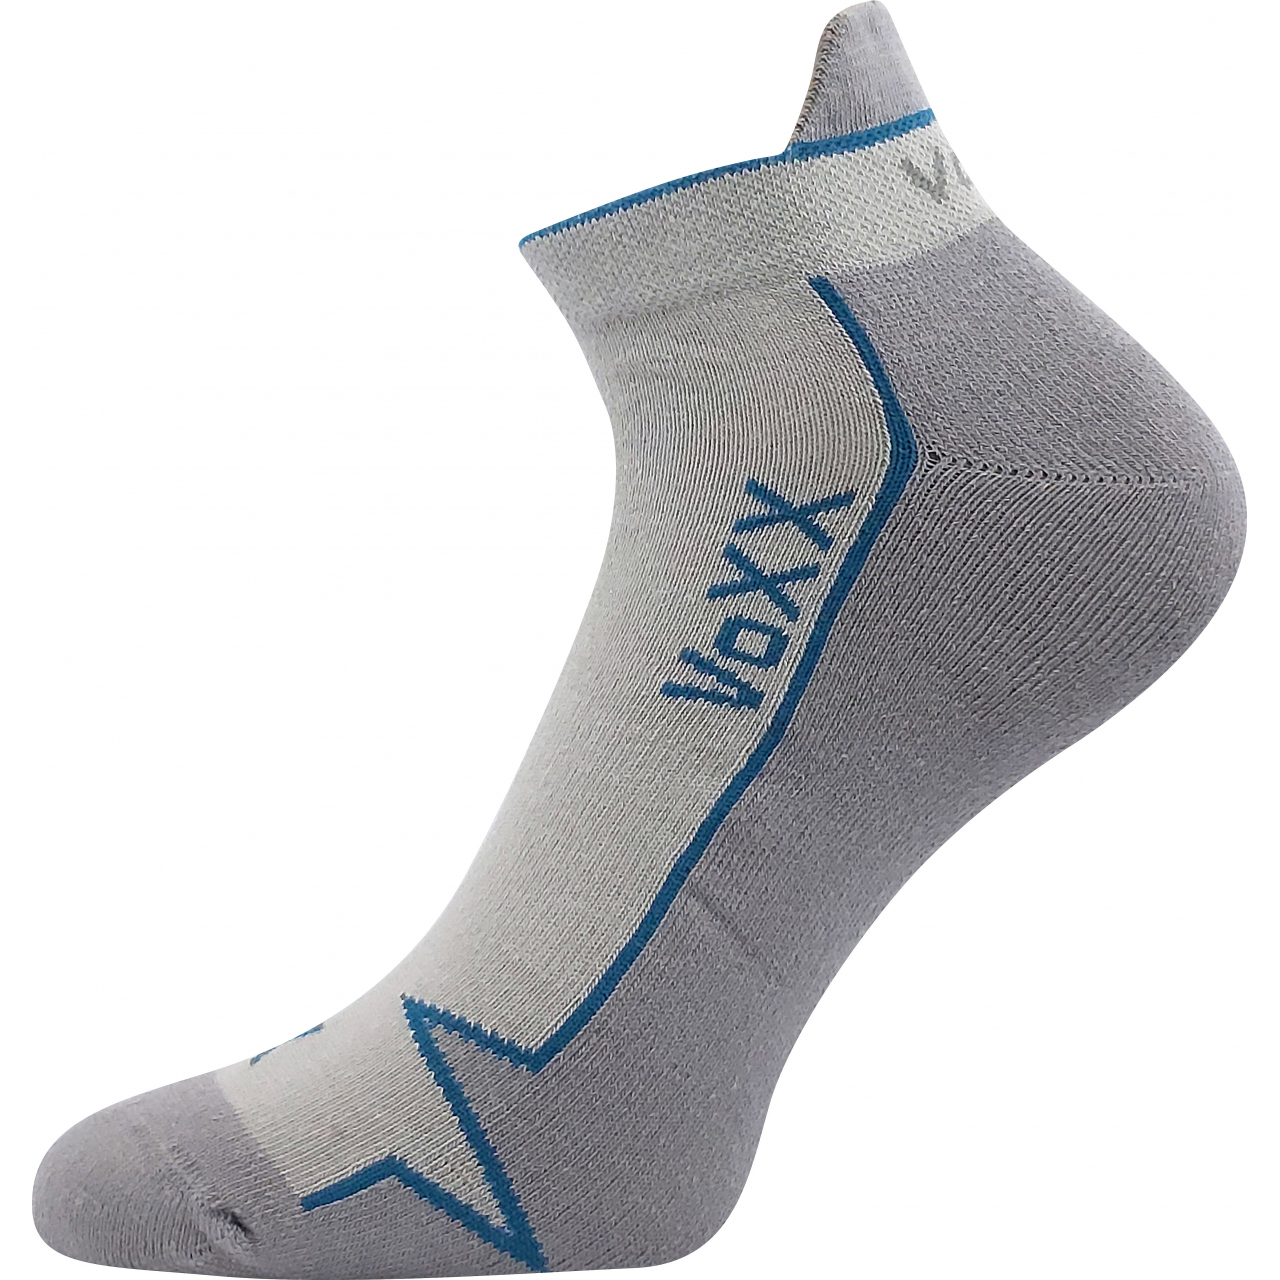 Ponožky sportovní Voxx Locator A - světle šedé, 35-38